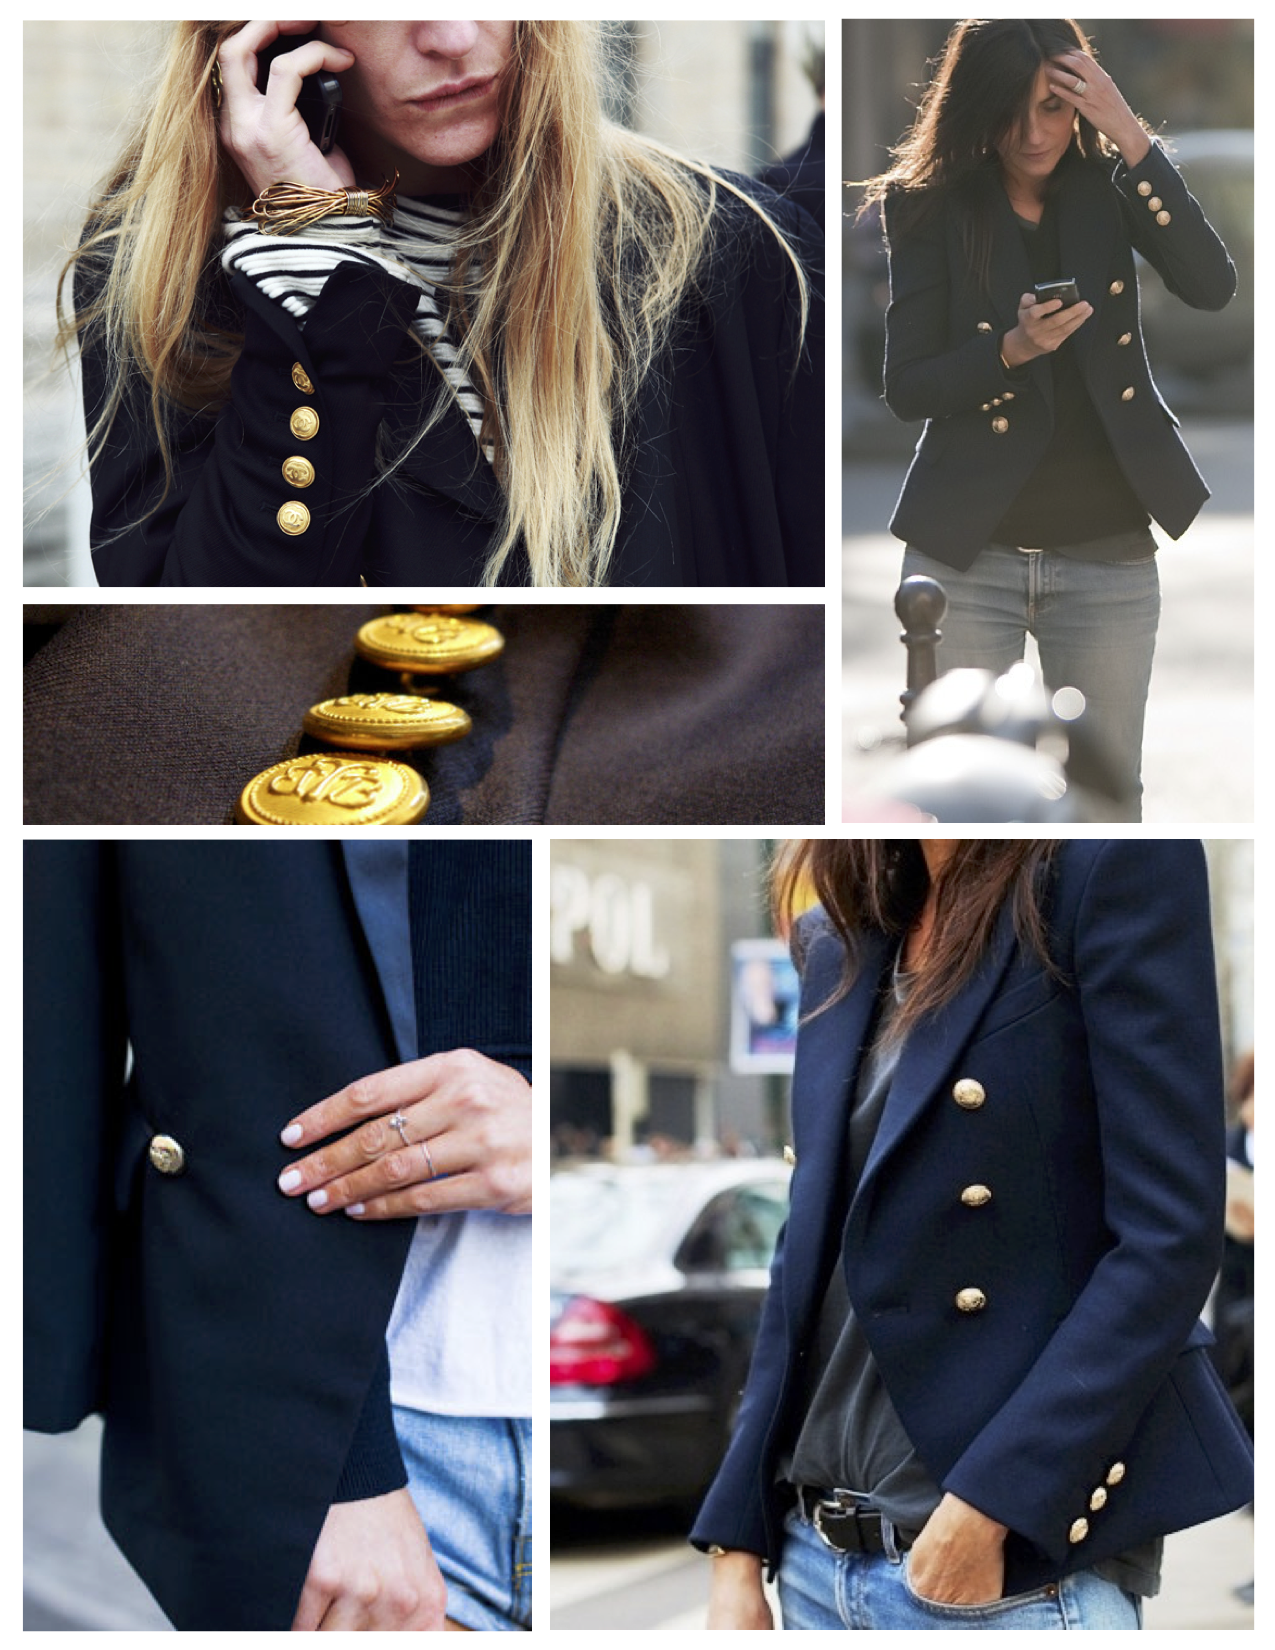 ralph lauren women's navy blazer gold buttons